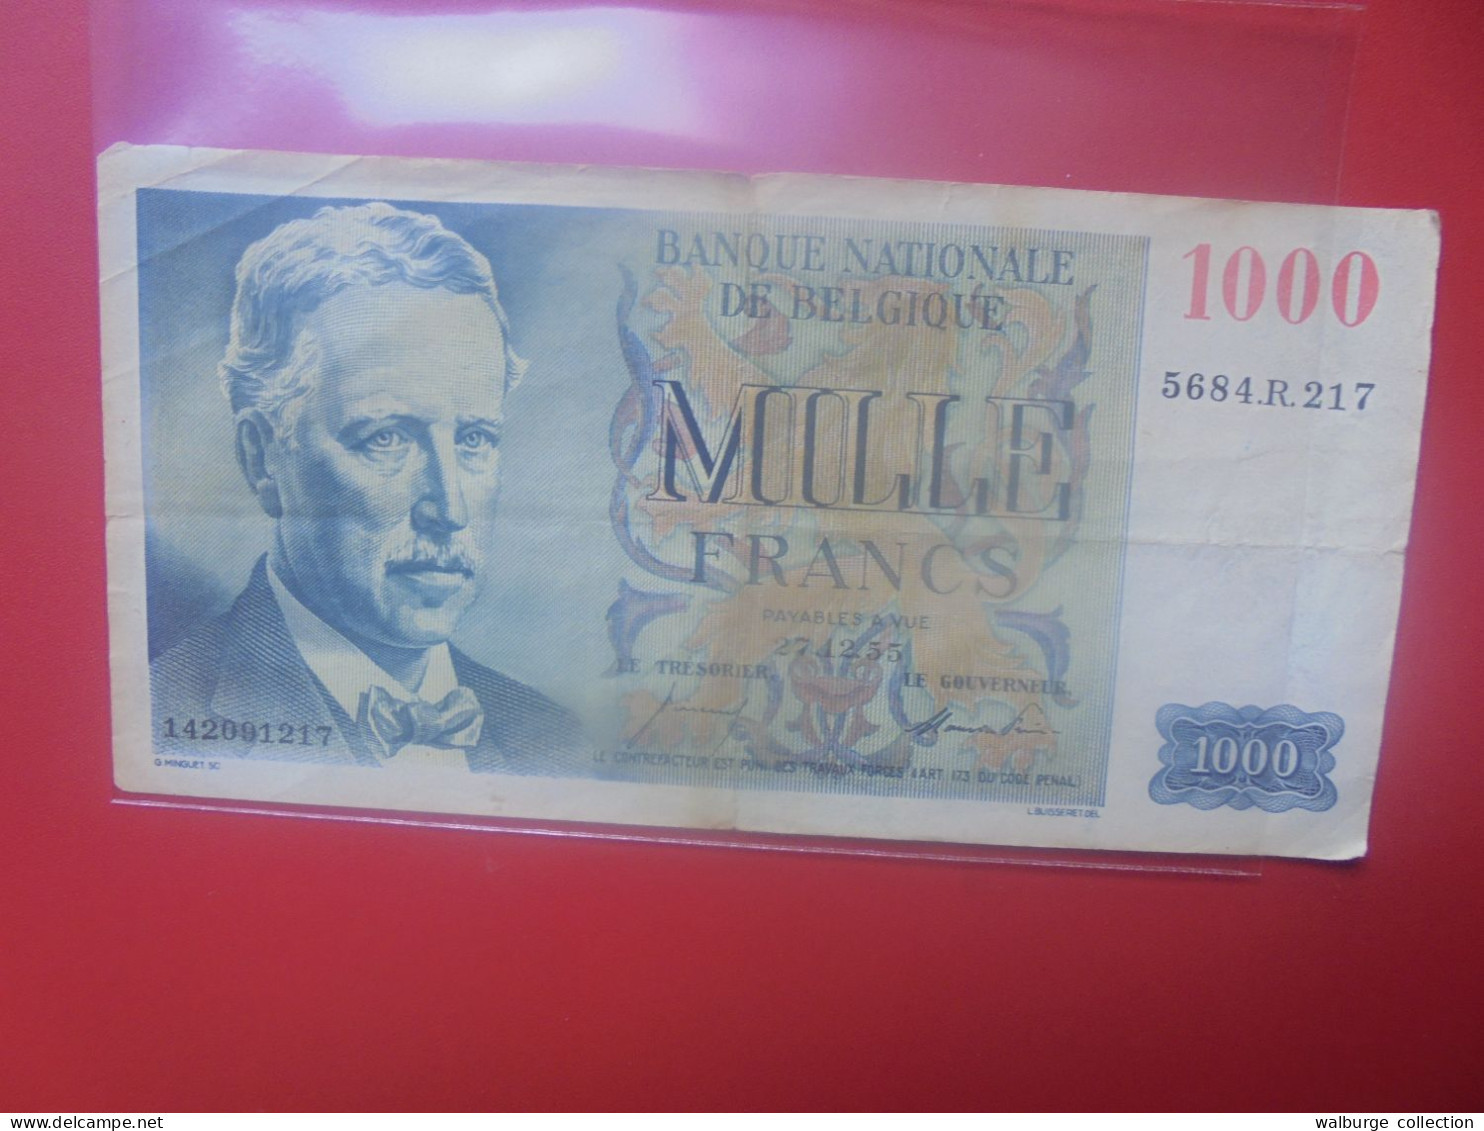 BELGIQUE 1000 FRANCS 1955 Circuler COTES: 40-80-180 EURO (B.18) - 1000 Francos